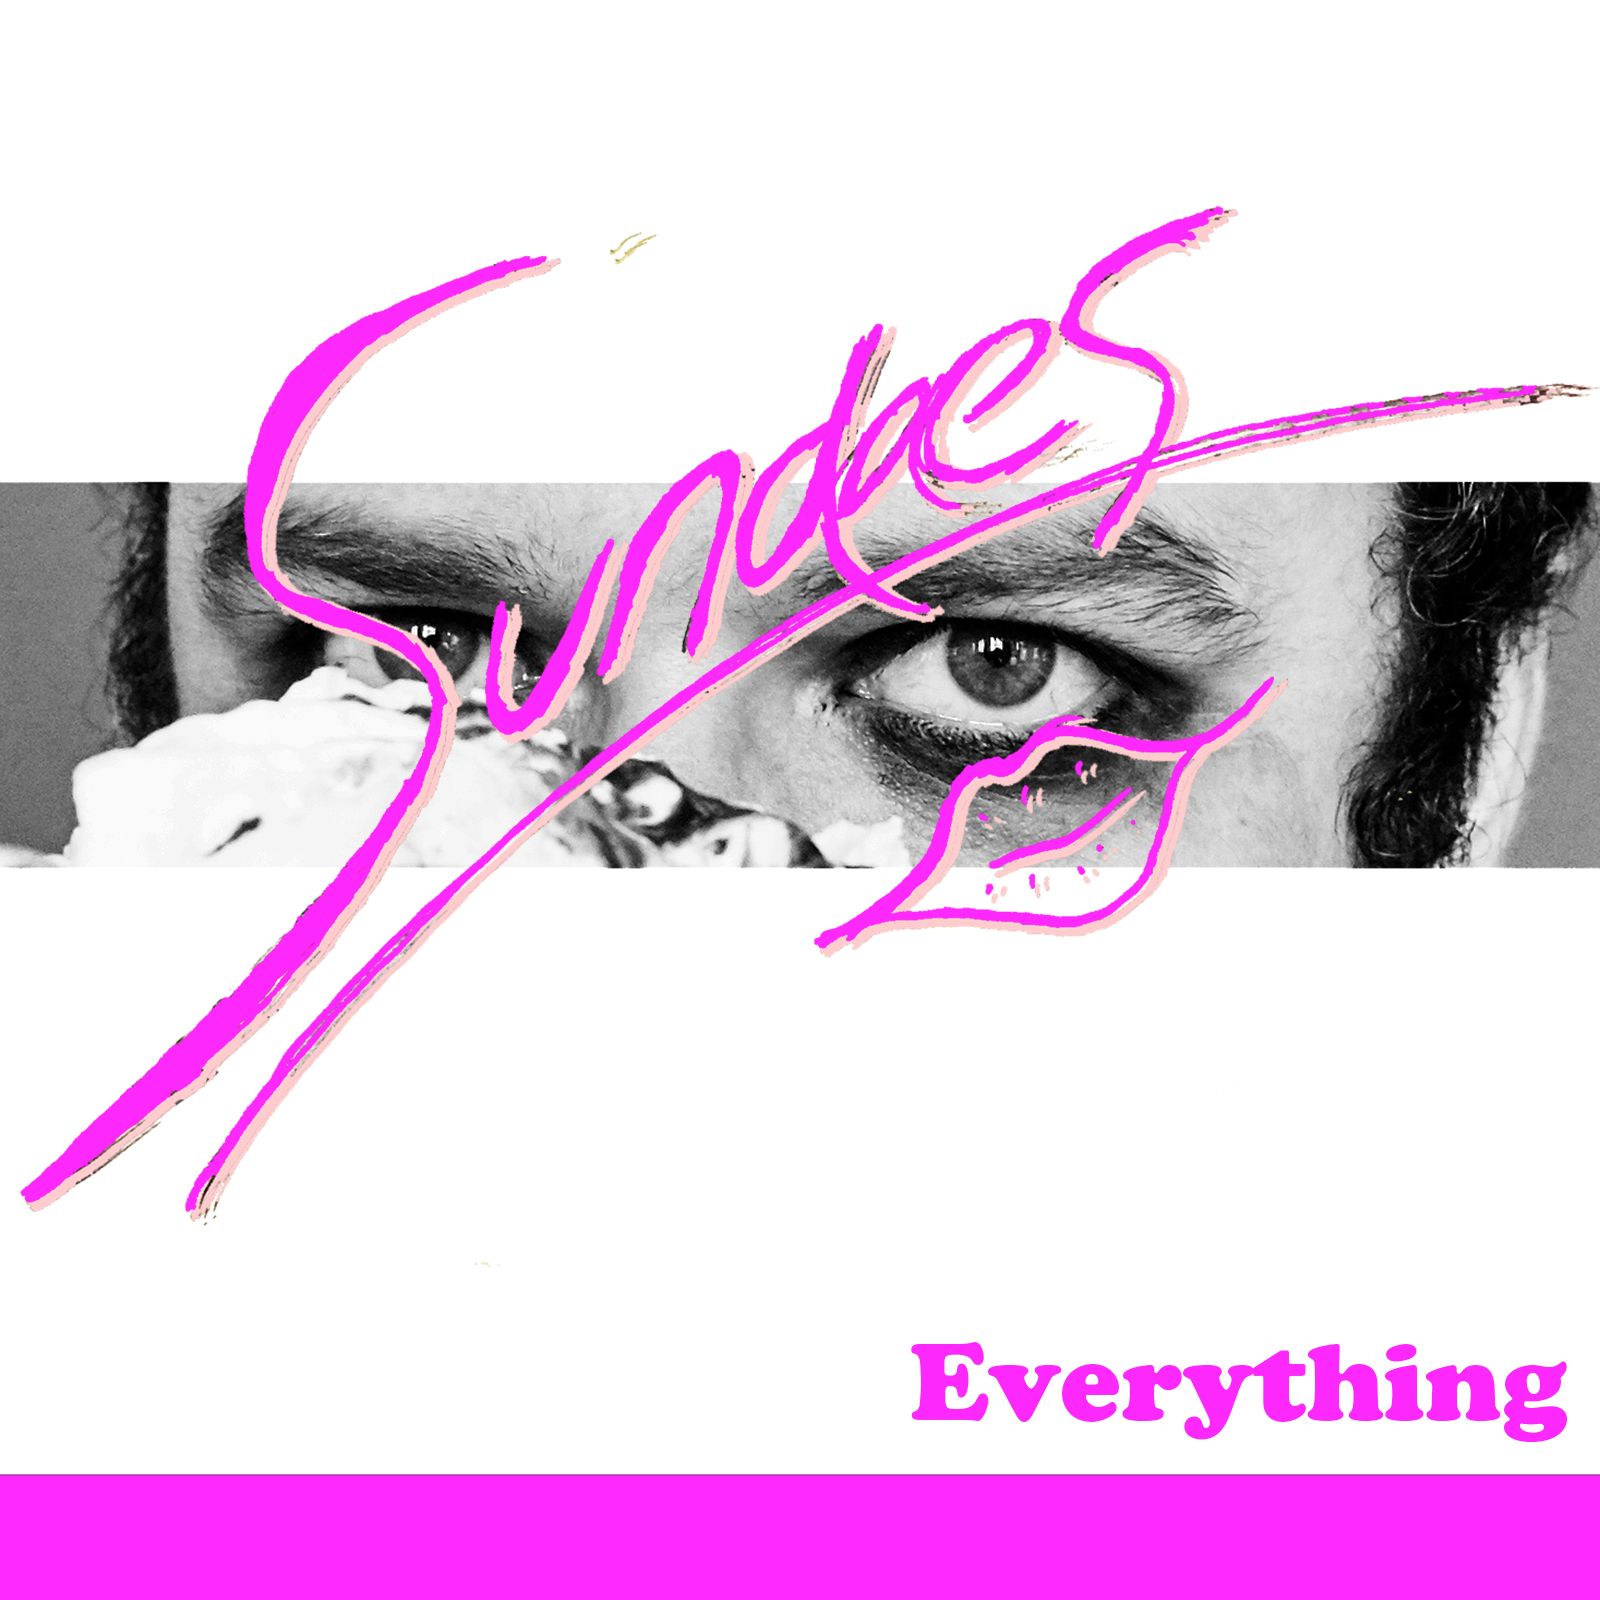 Sundaes – “Everything”